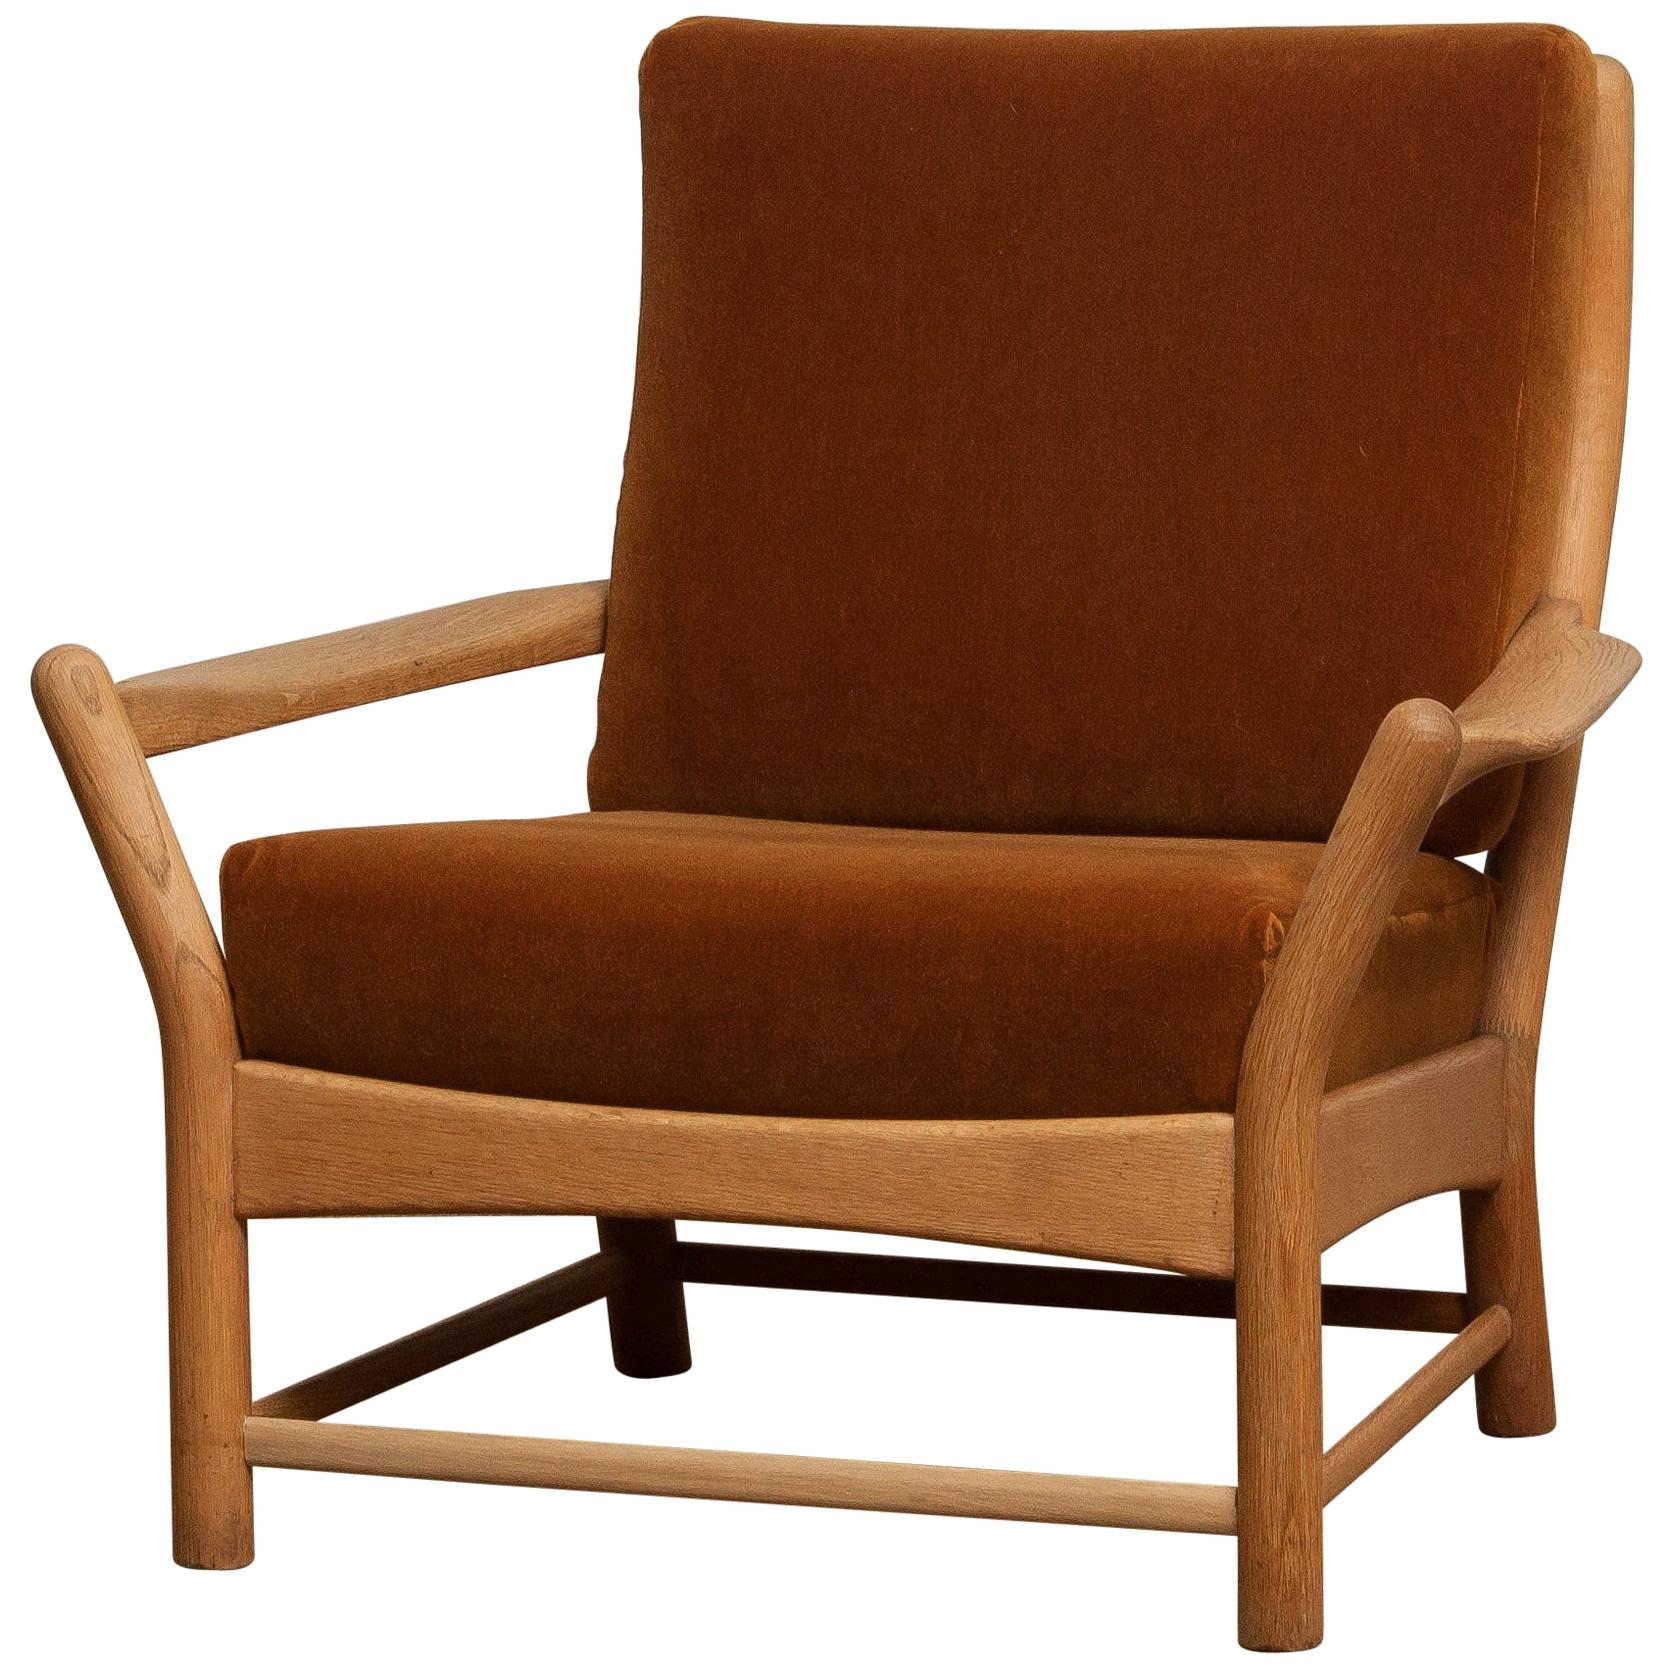 1950s, Oak and Brown Velvet Lounge Arm Easy Chair from Denmark